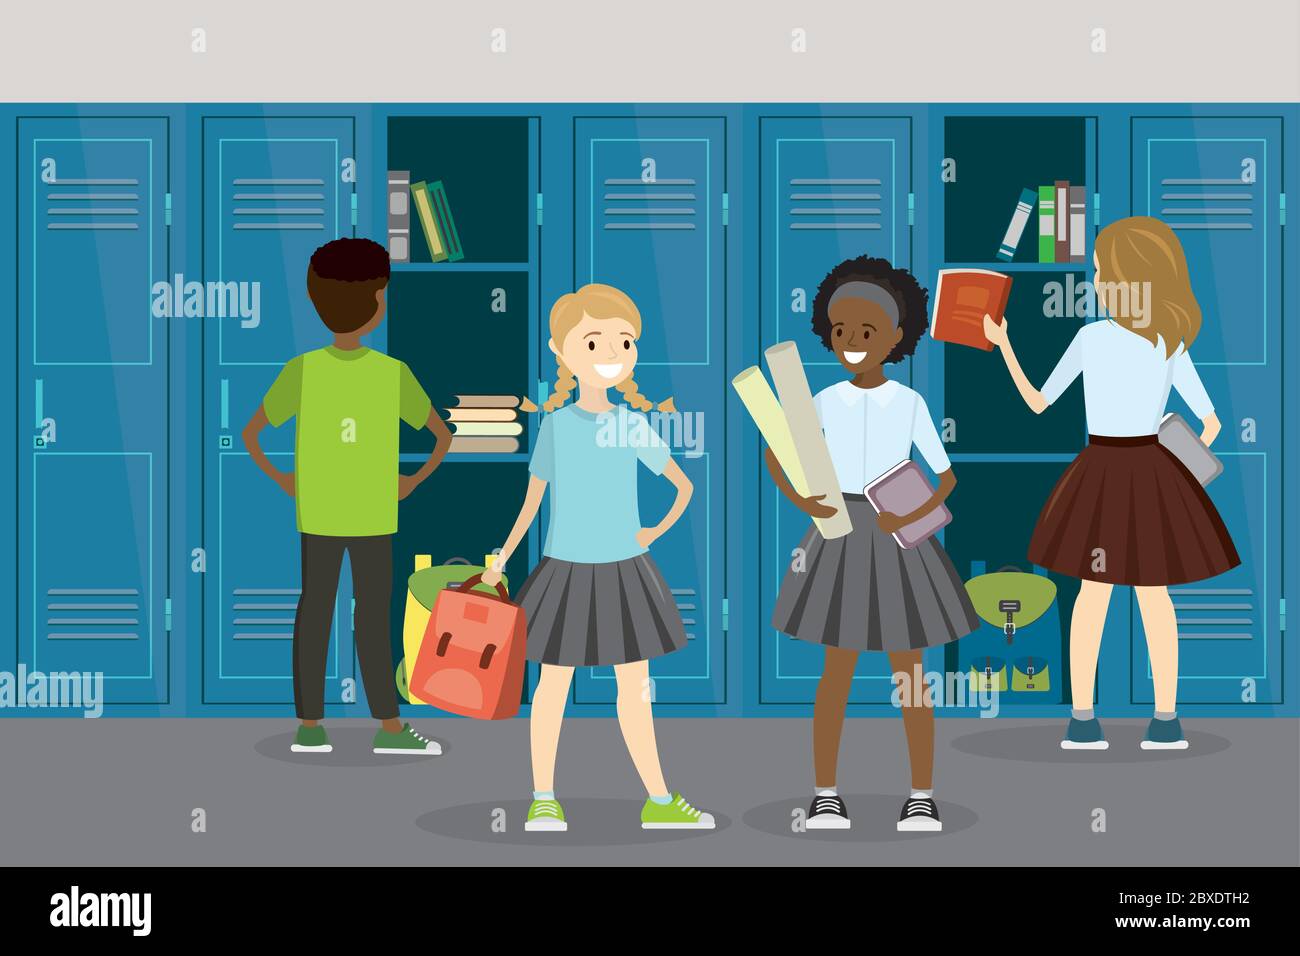 Différents élèves adolescents dans la salle d'école, ouvert et fermé casiers scolaires, intérieur et mobilier de l'école, illustration vectorielle plate Illustration de Vecteur